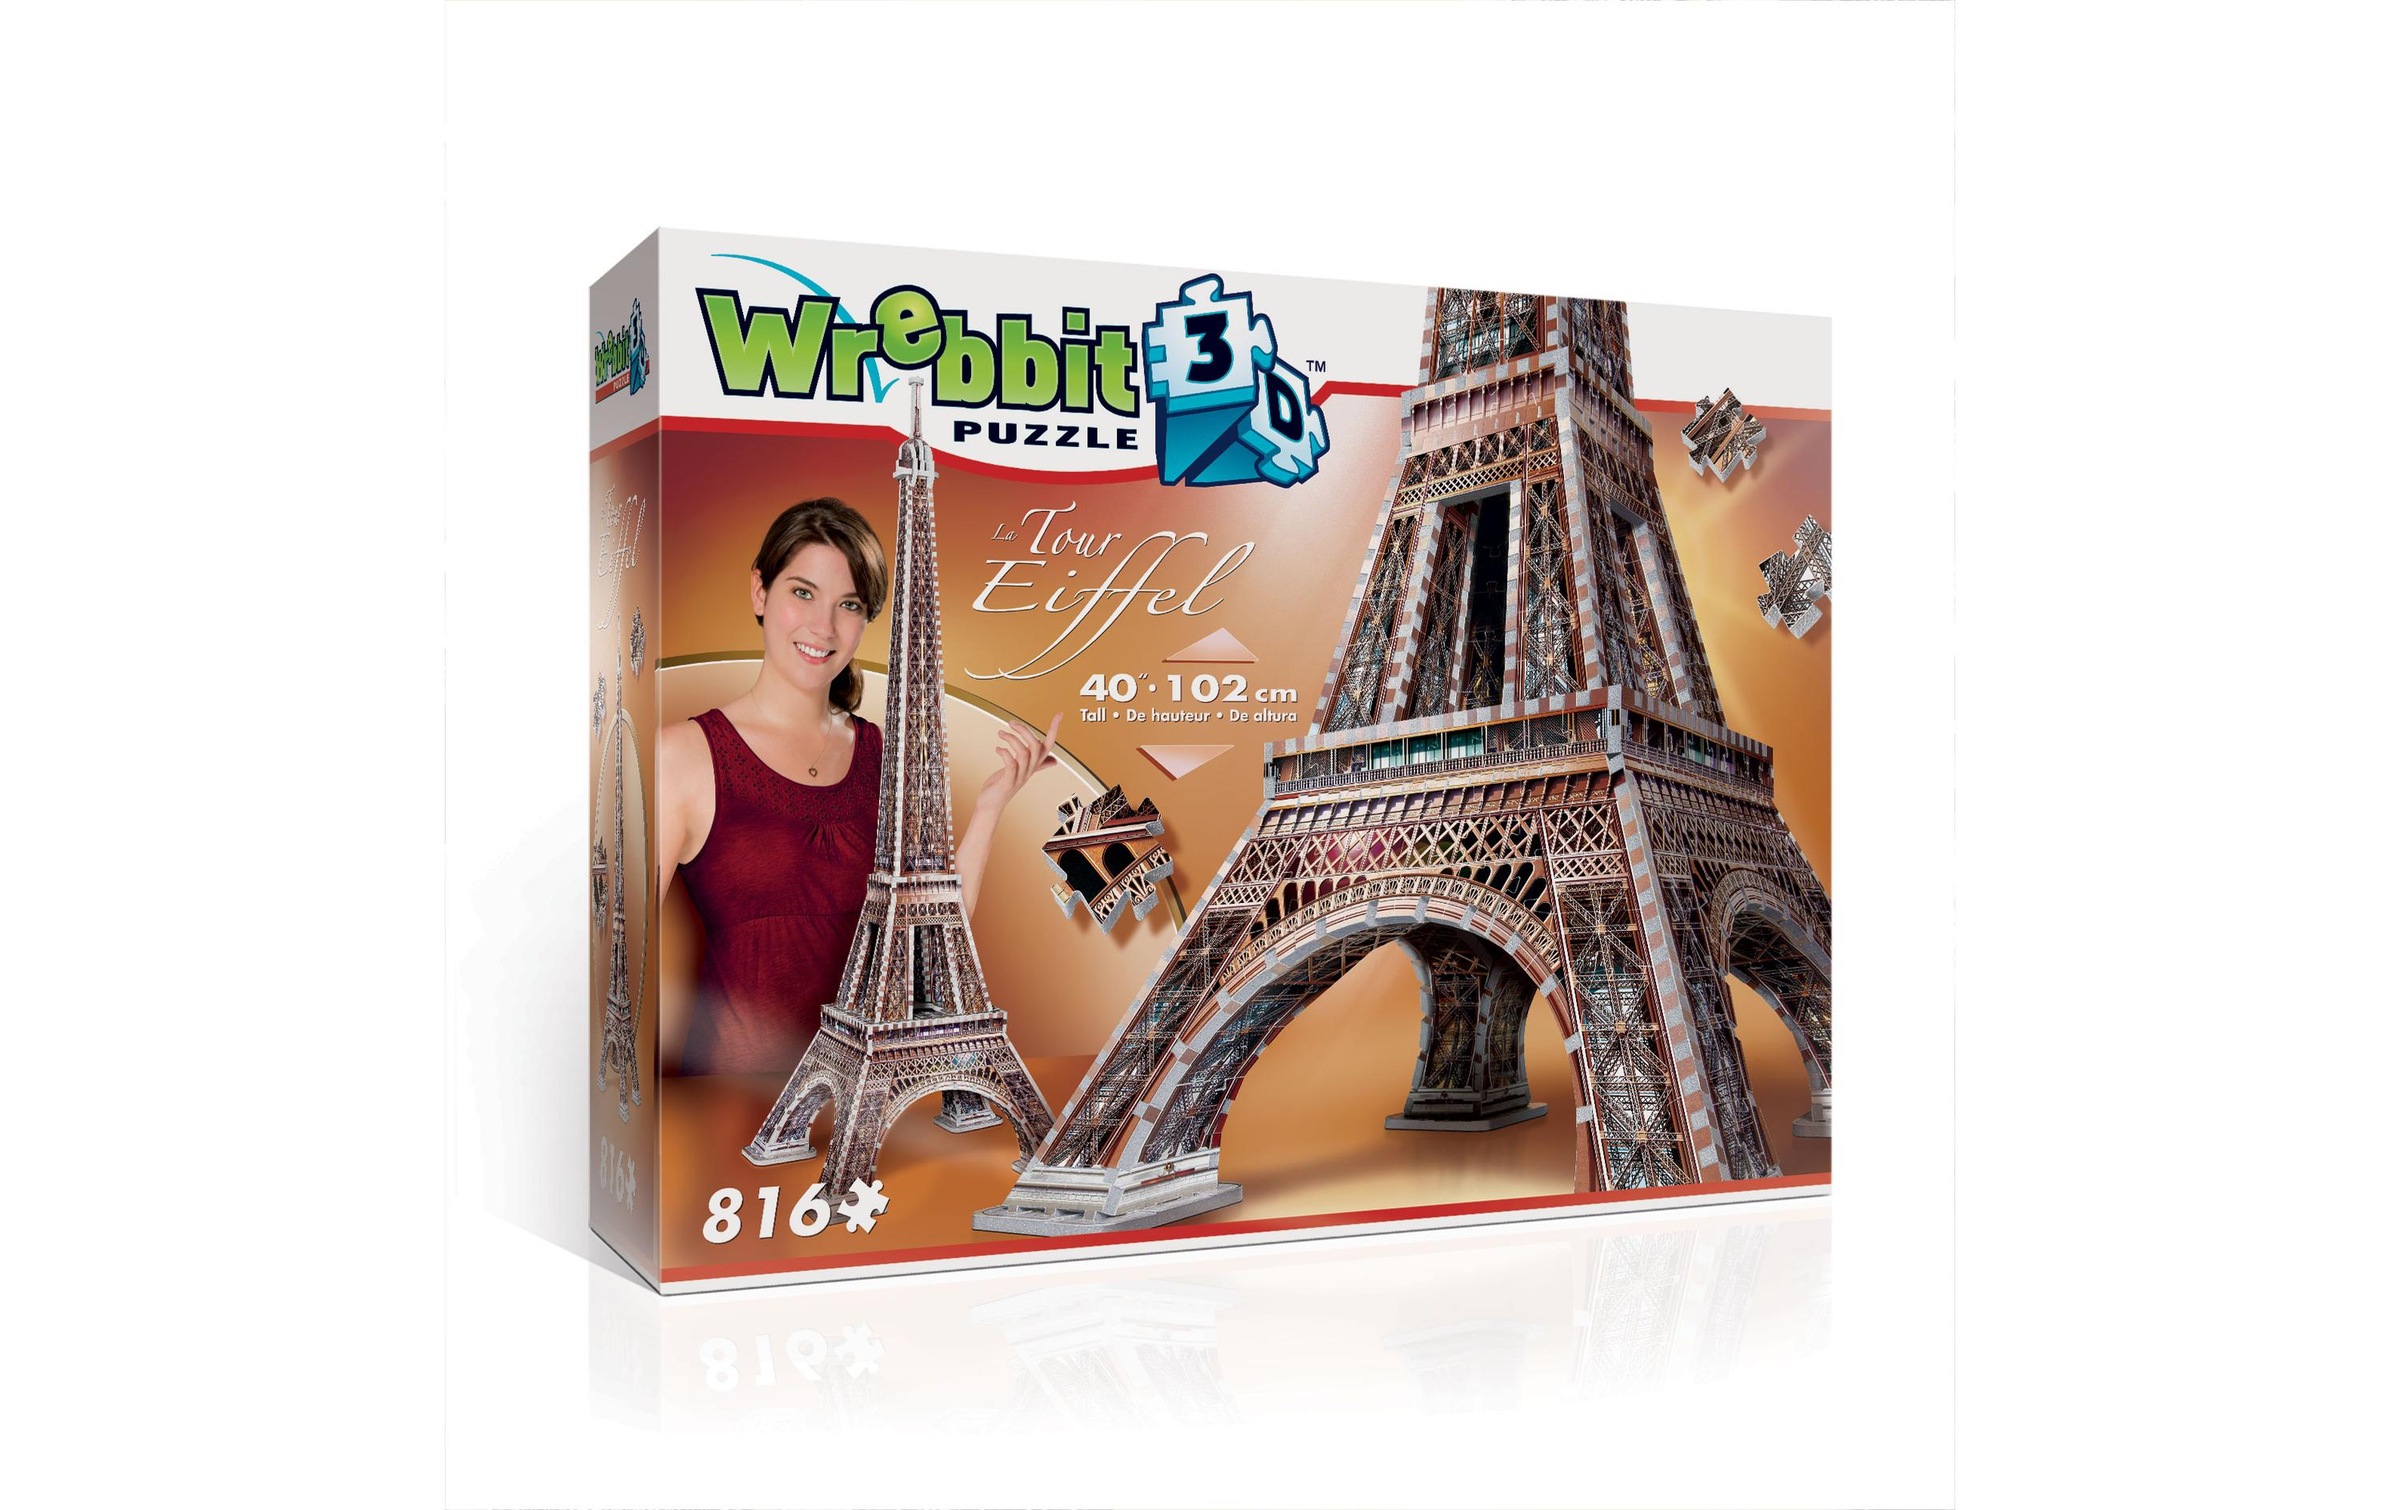 La Tour Eiffel // 3D Puzzle // Revell Online-Shop